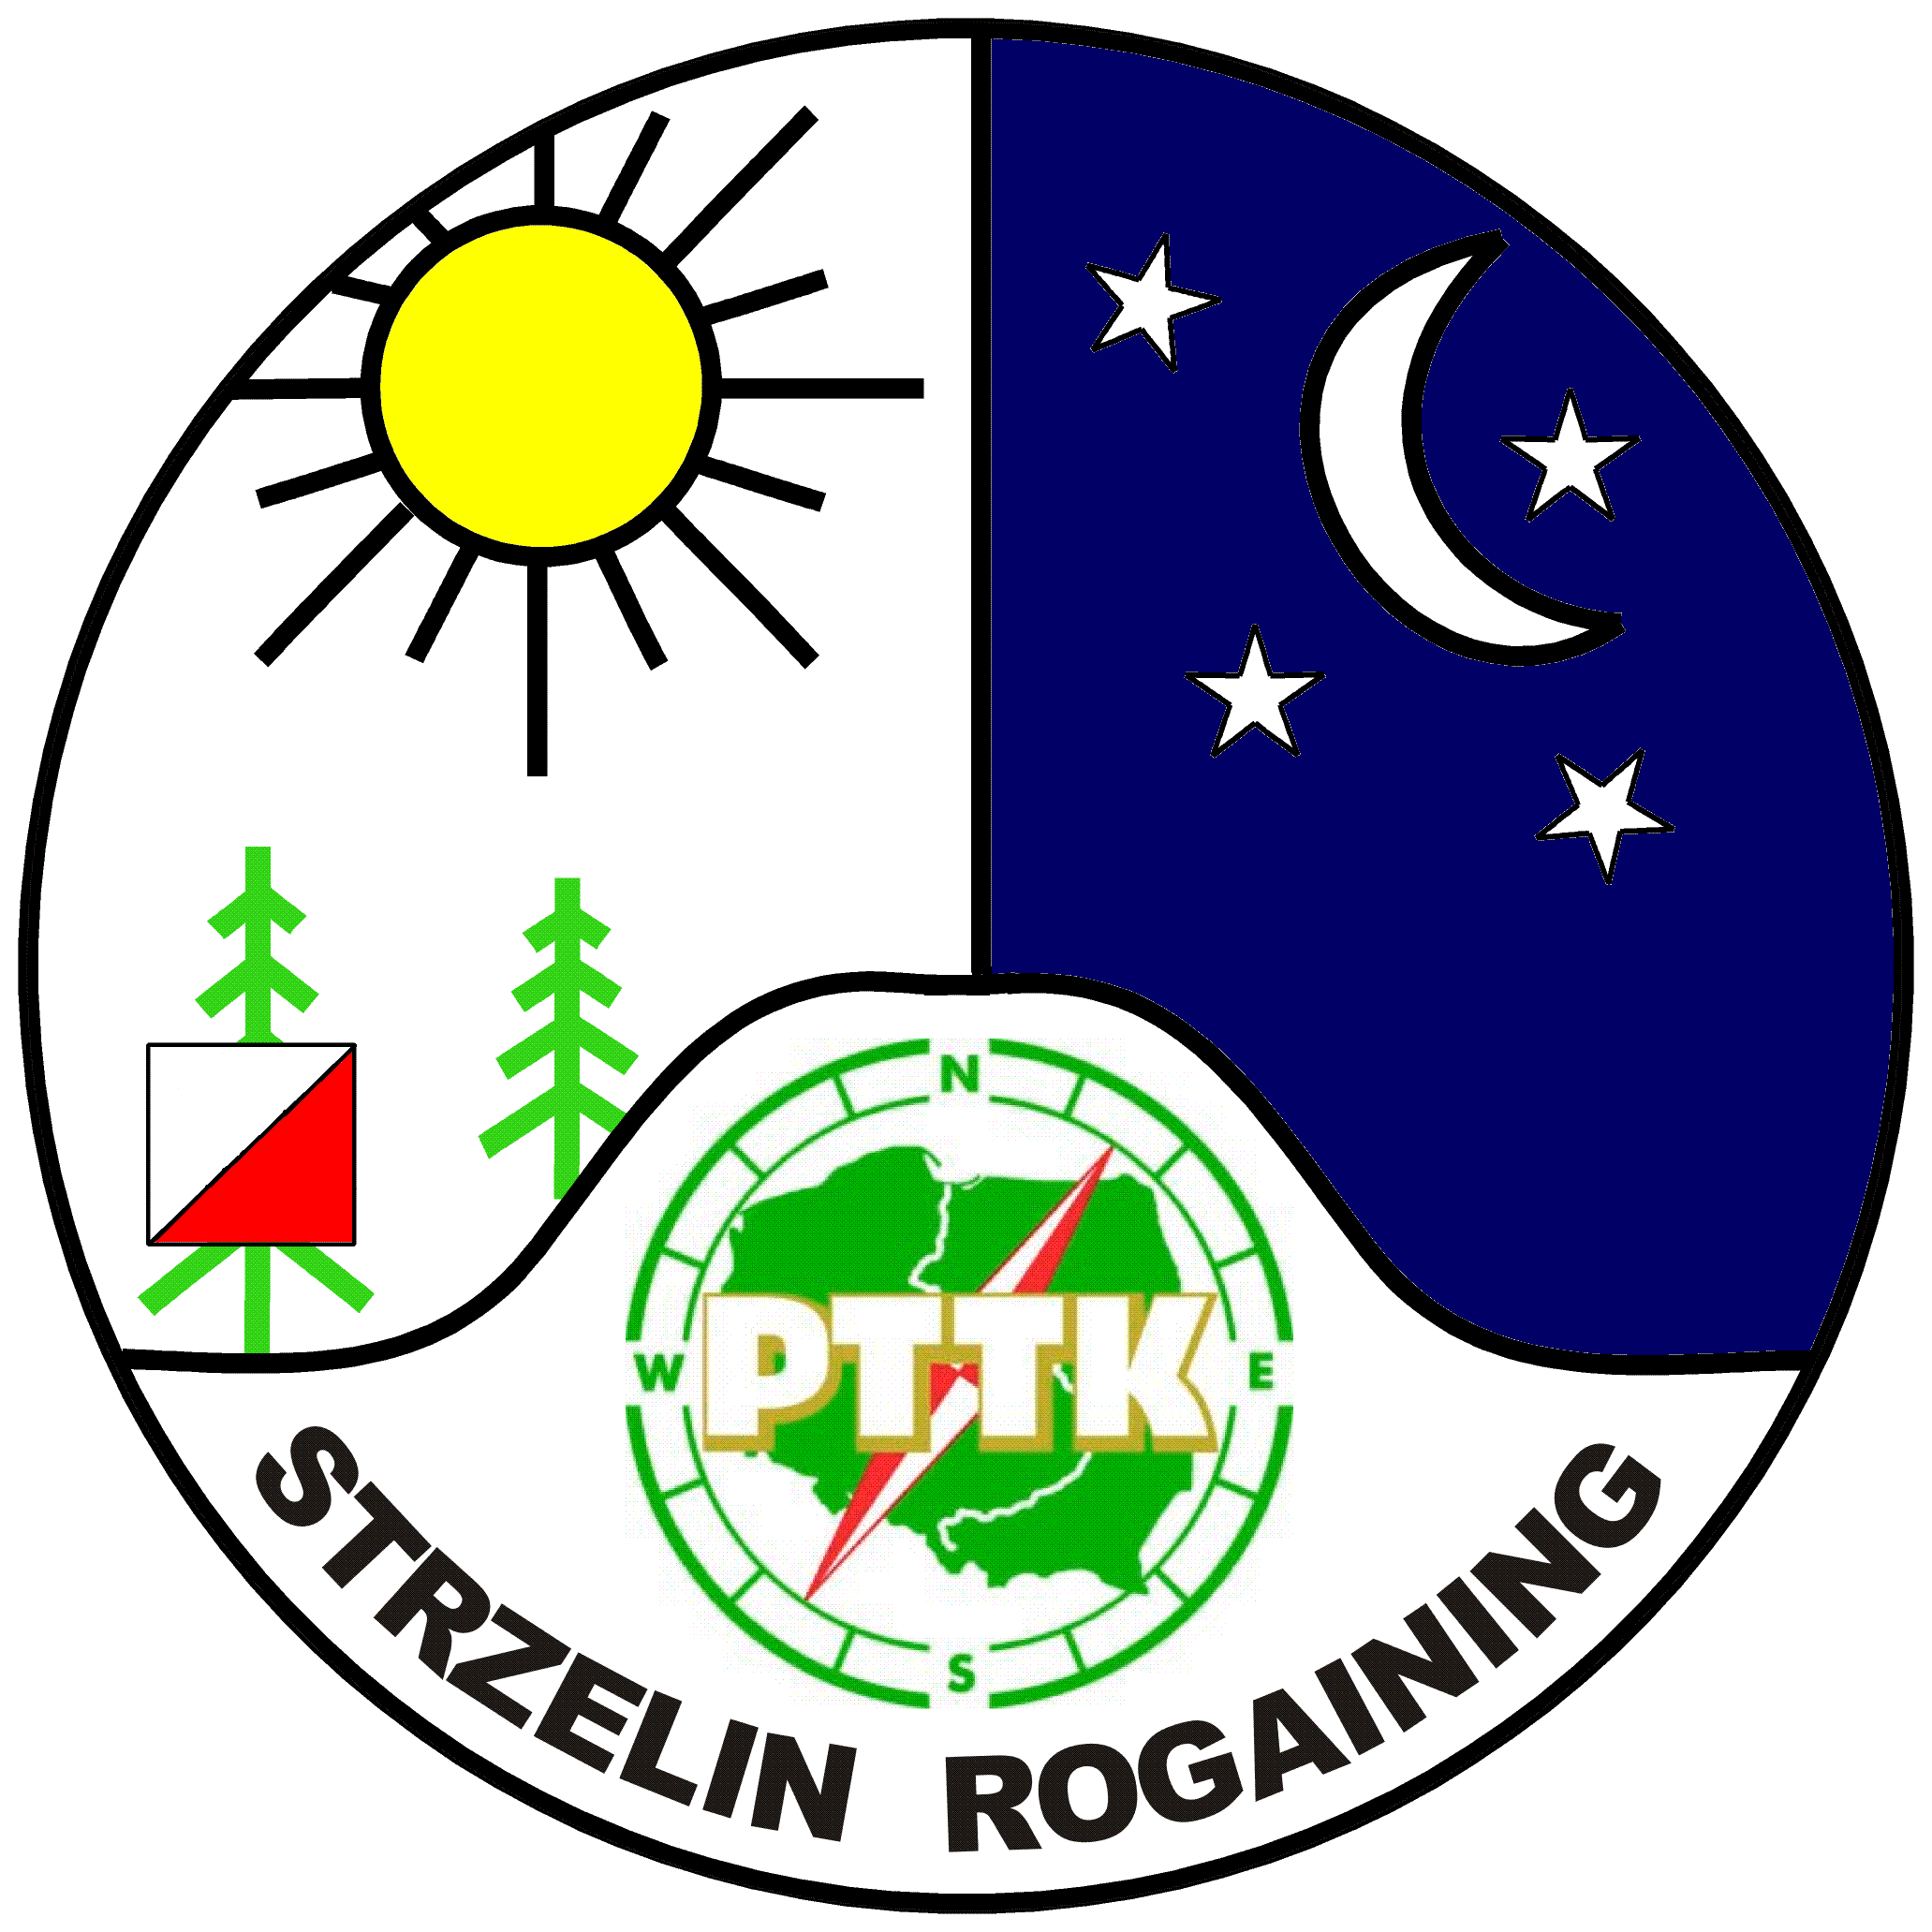 PTTK Strzelin - rogaining